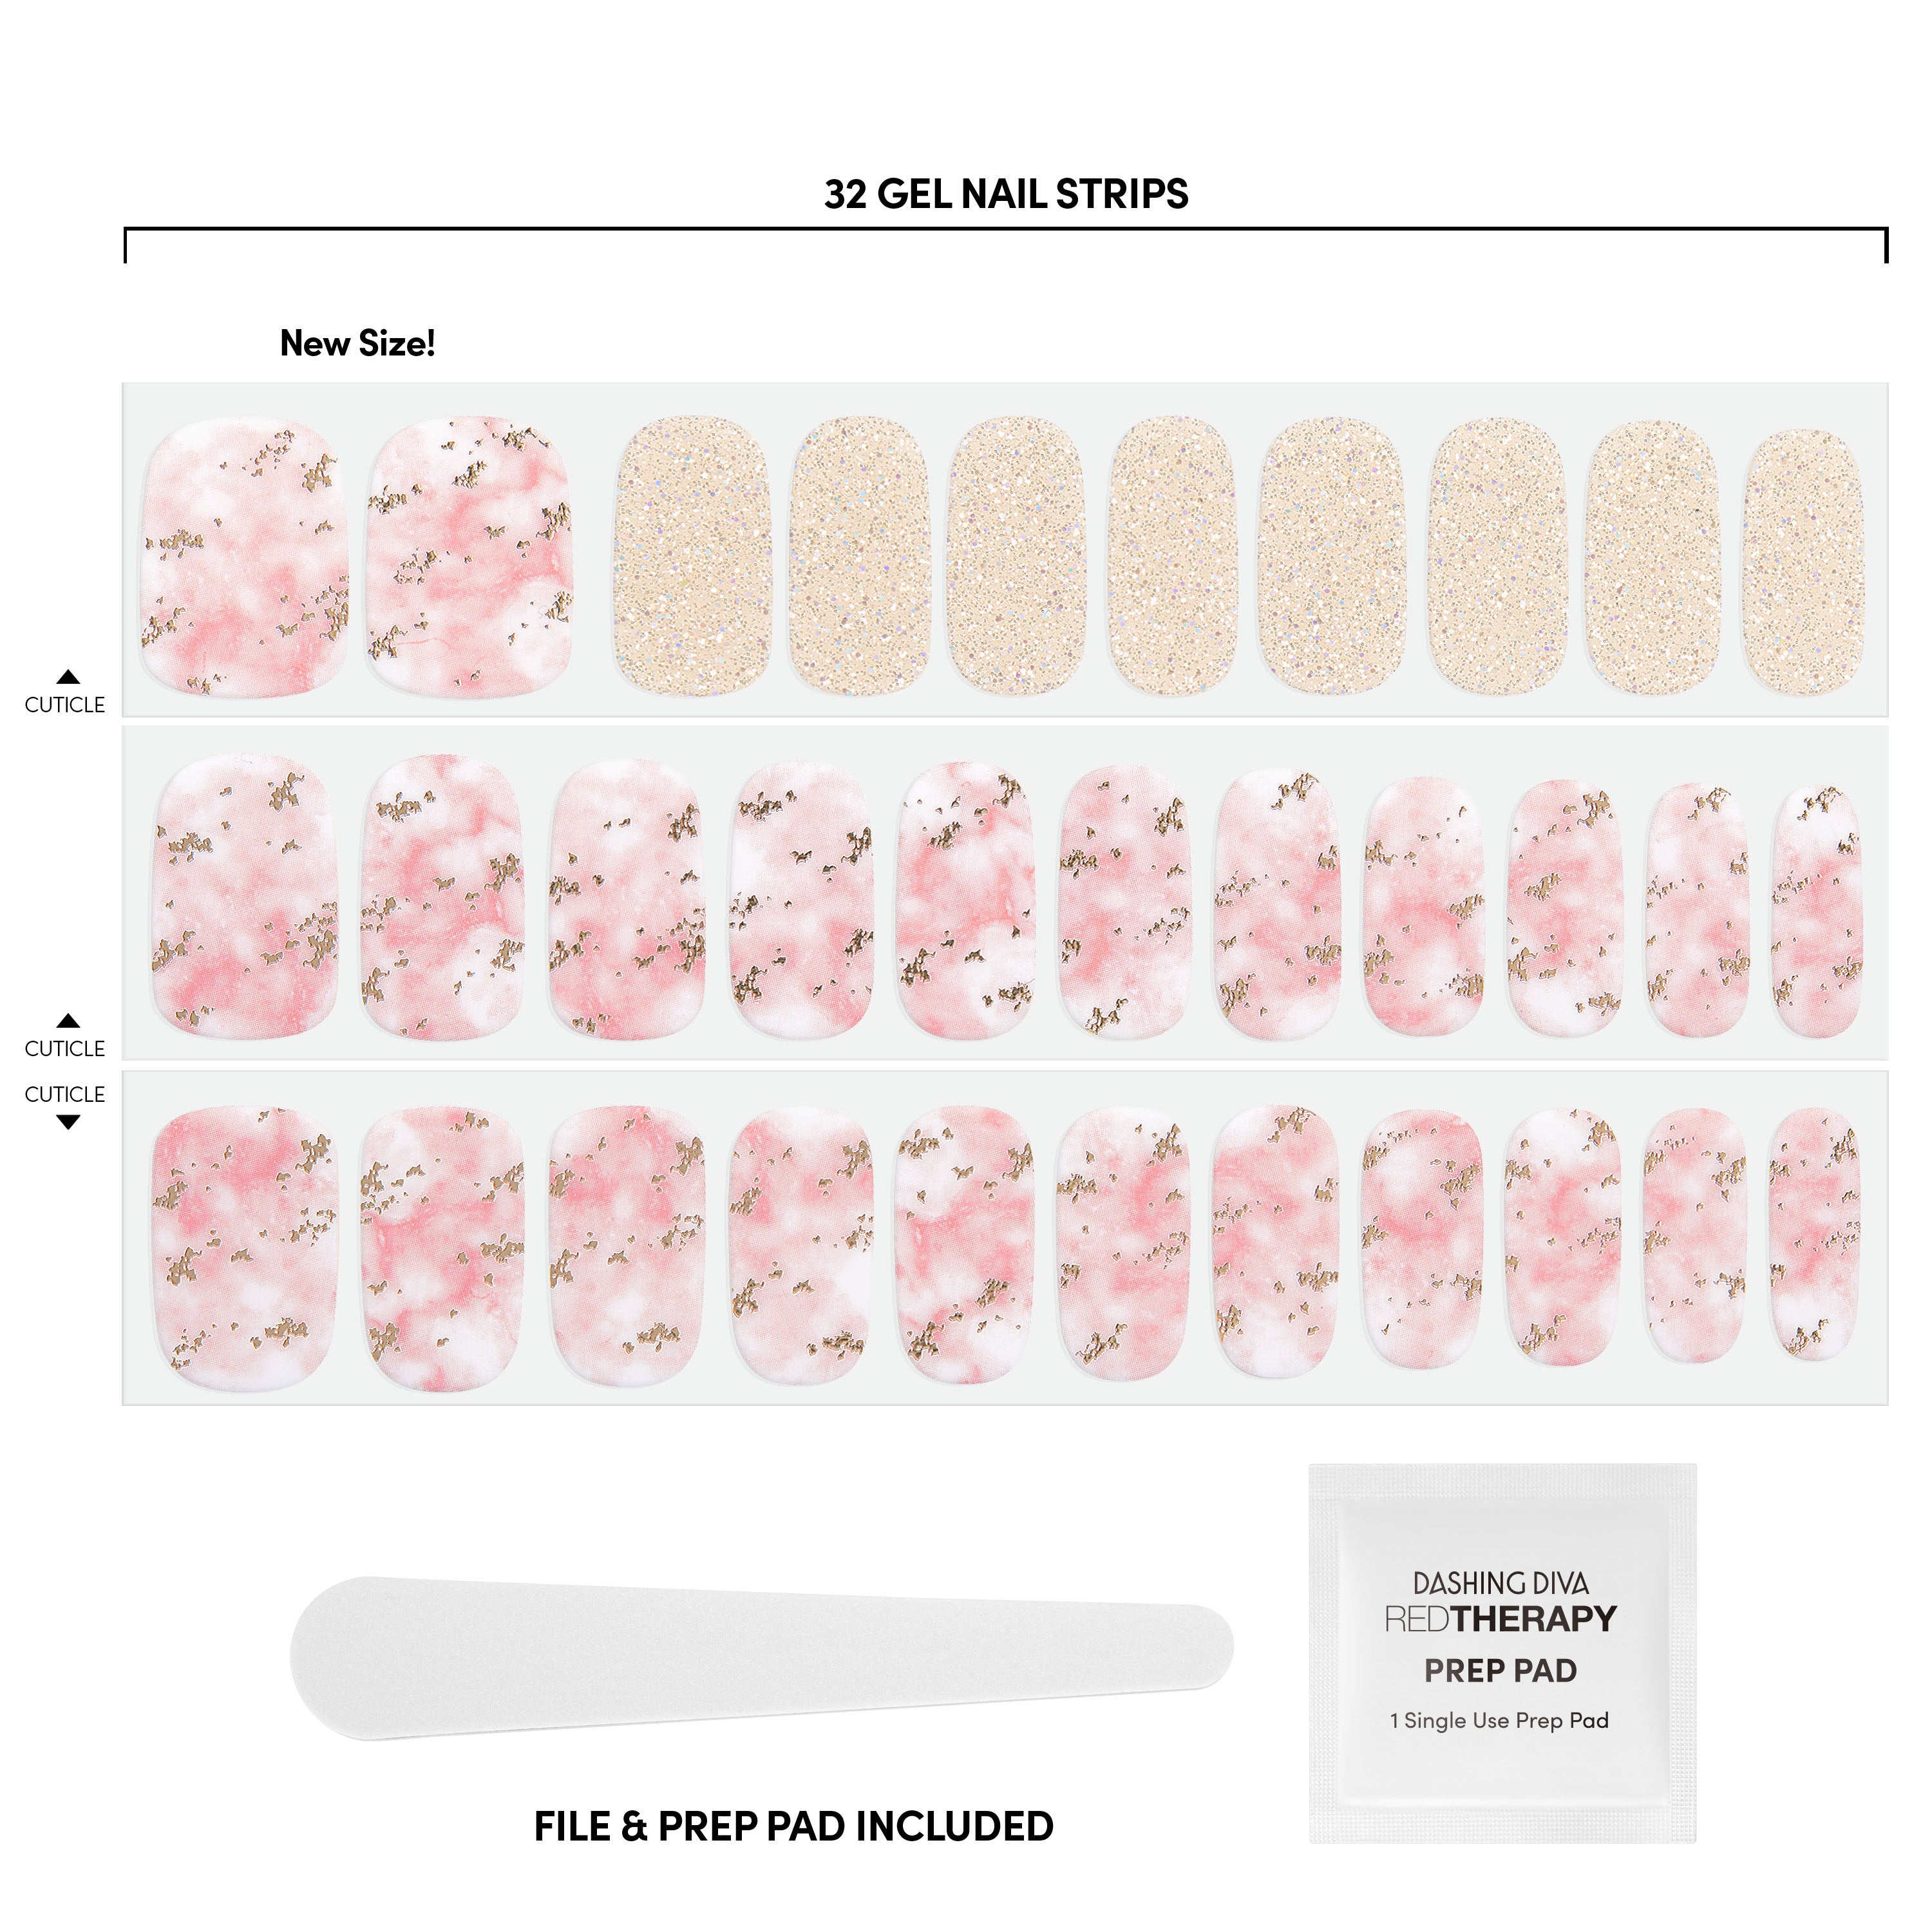 Buy LA Colors Stick on Nail Wraps Glam online